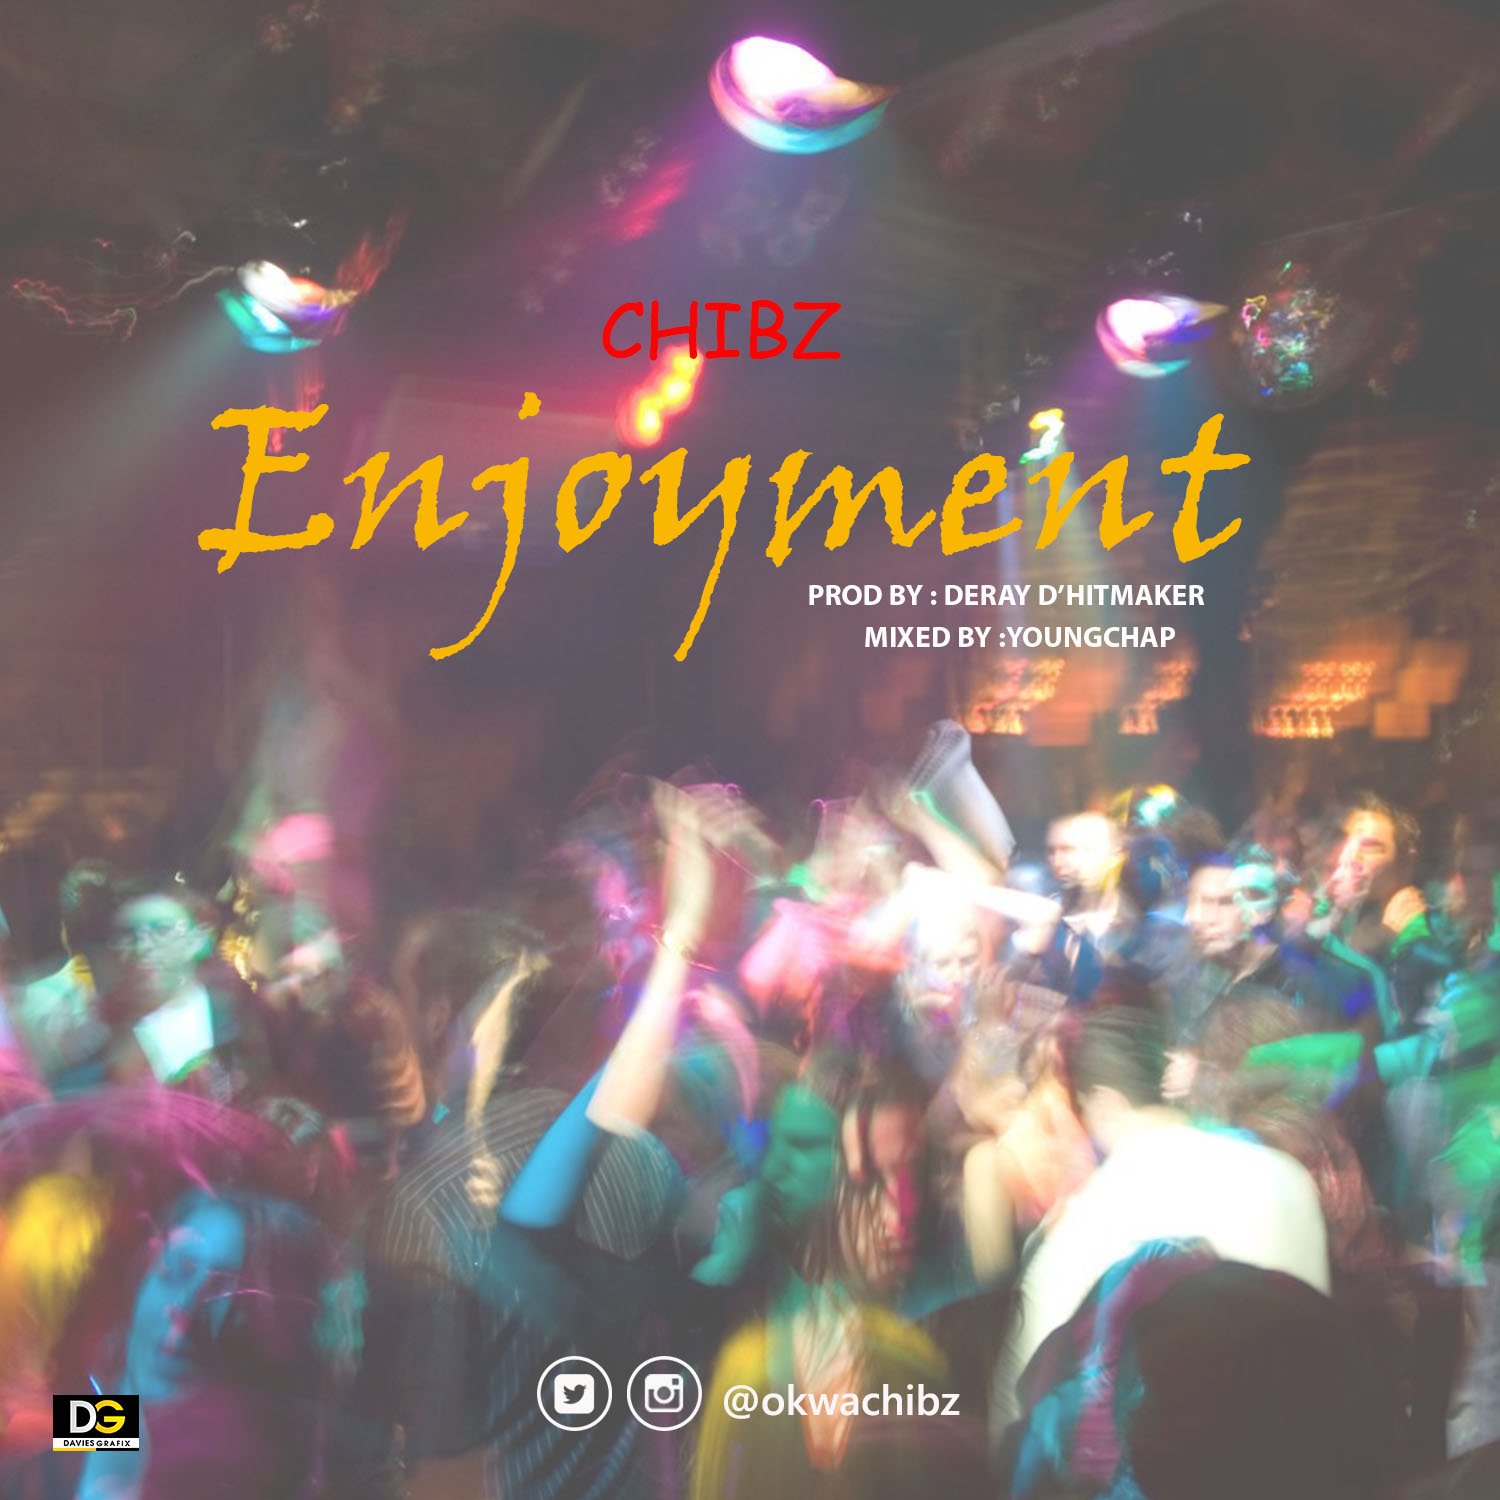 VIDEO: Chibz – Enjoyment